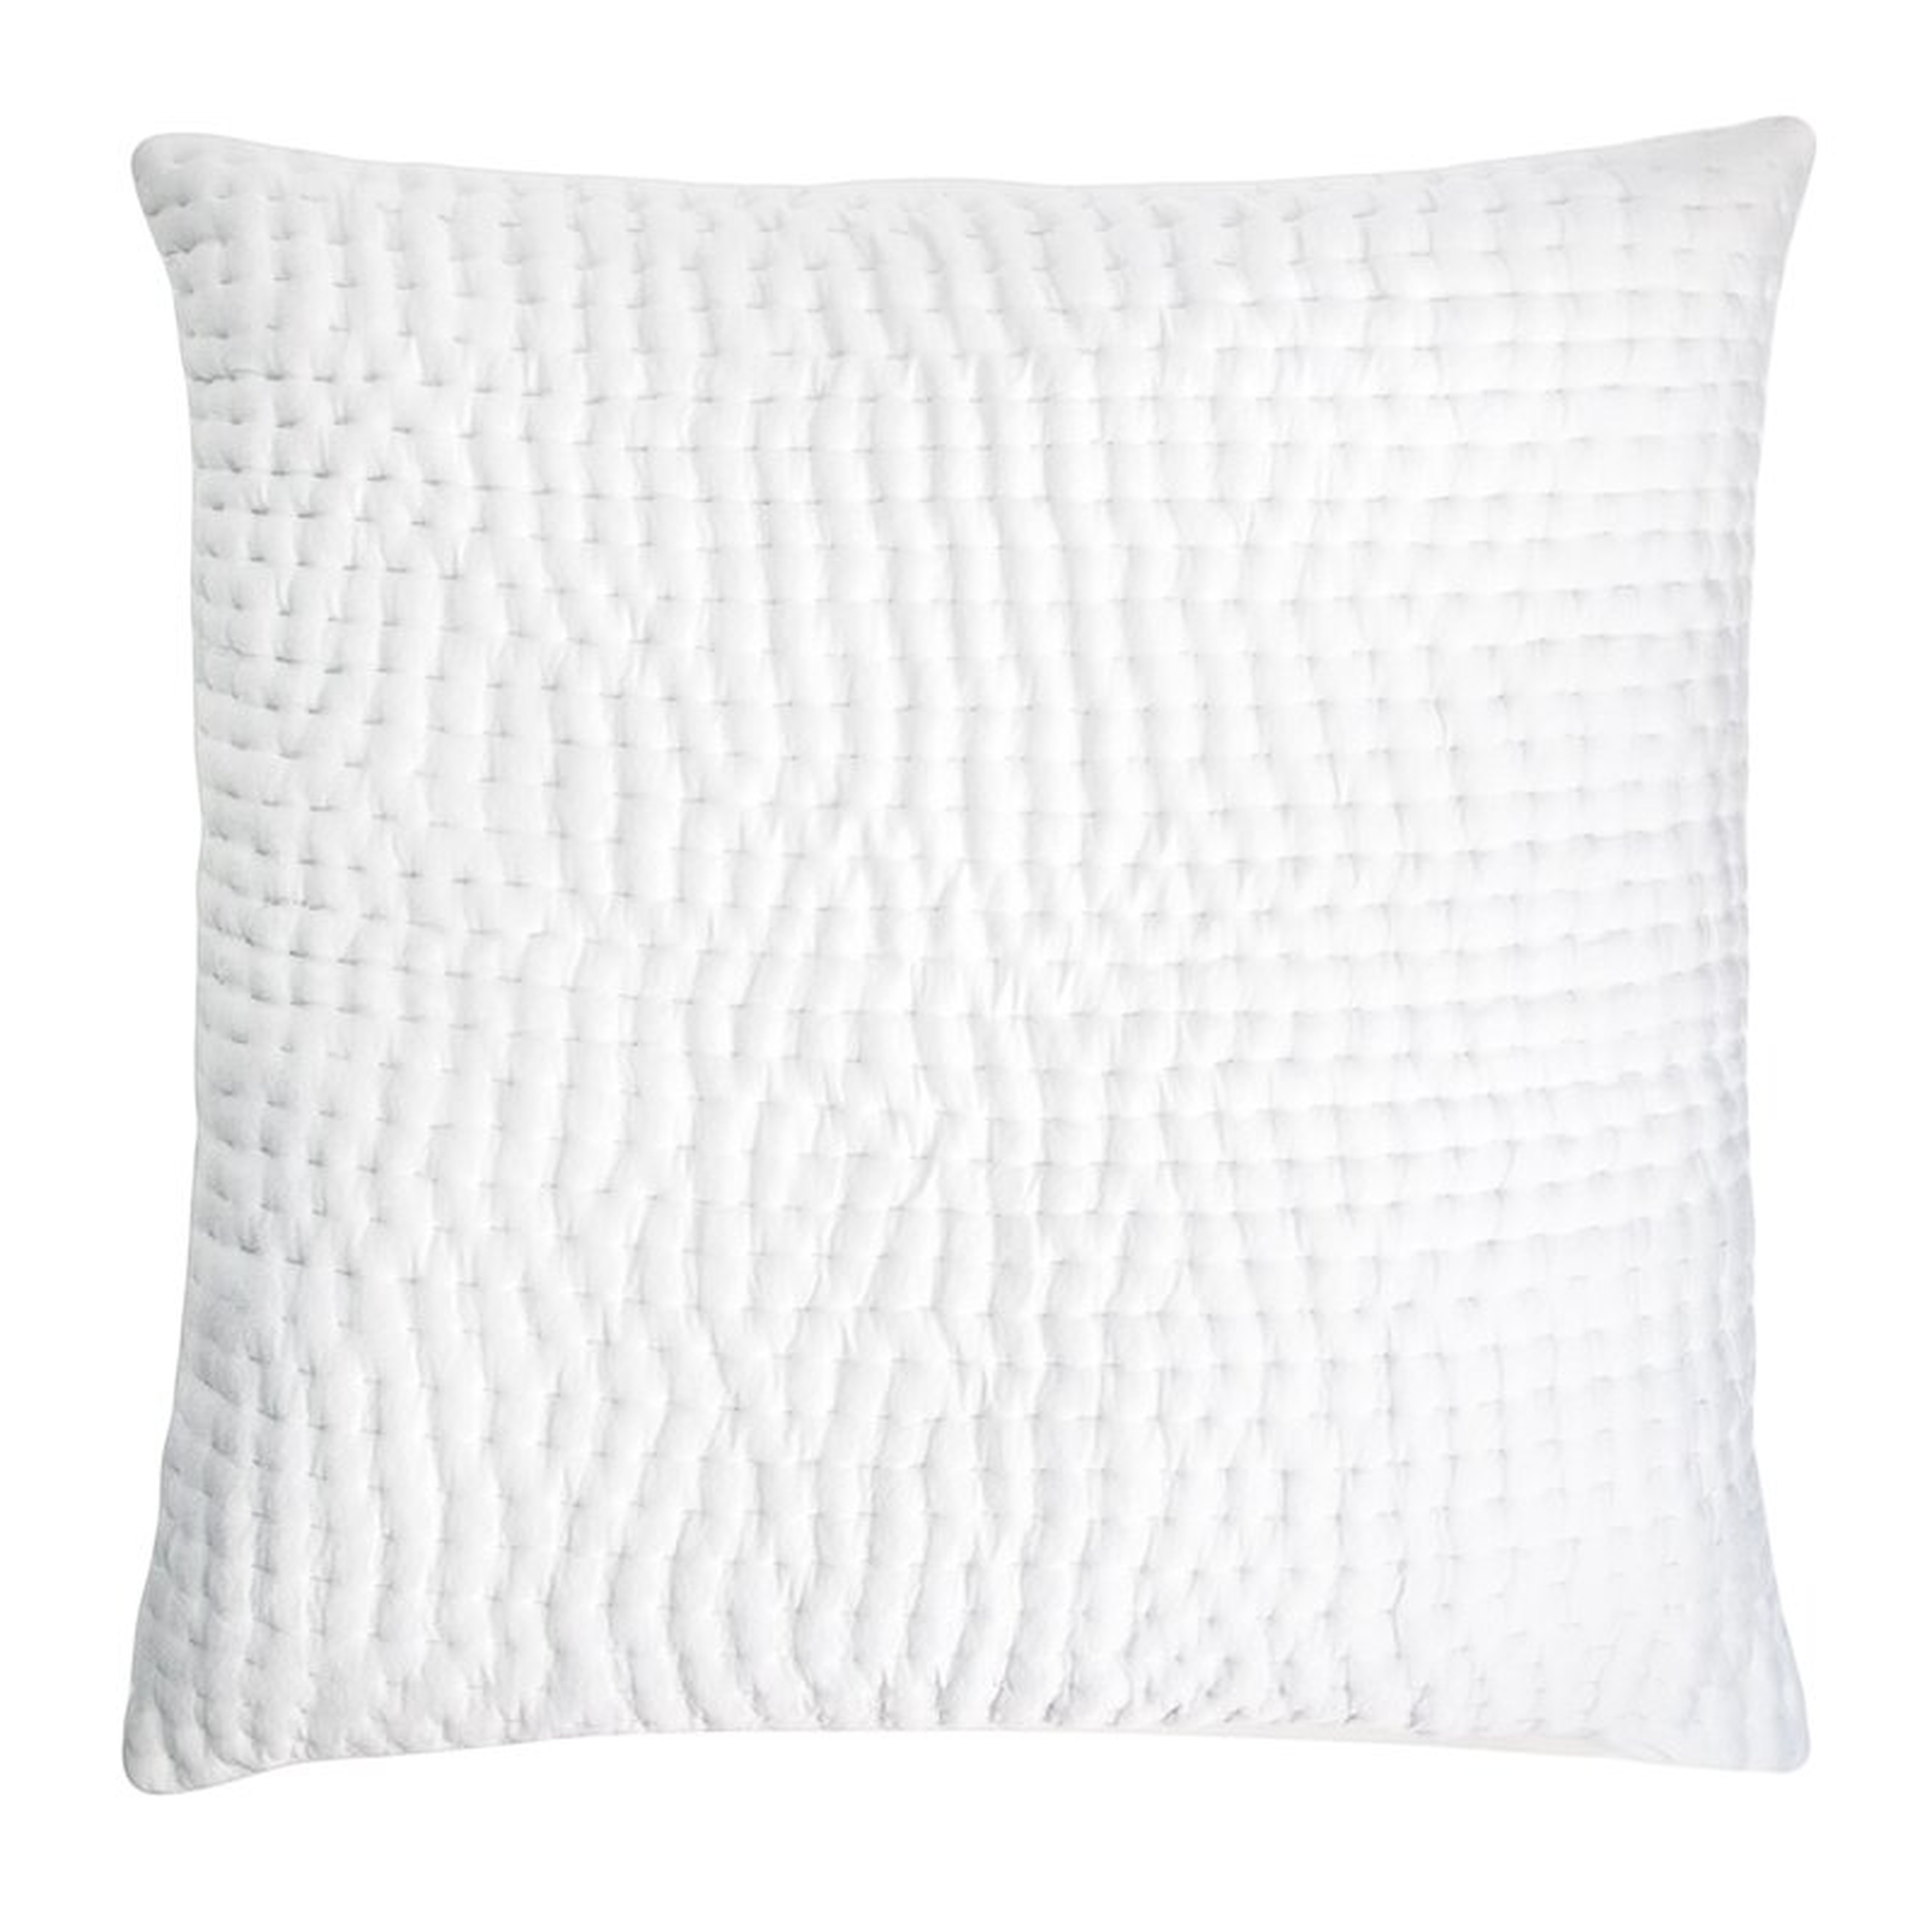 Kevin O'Brien Studio Hand Stitched Square Pillow Cover Color: White - Perigold